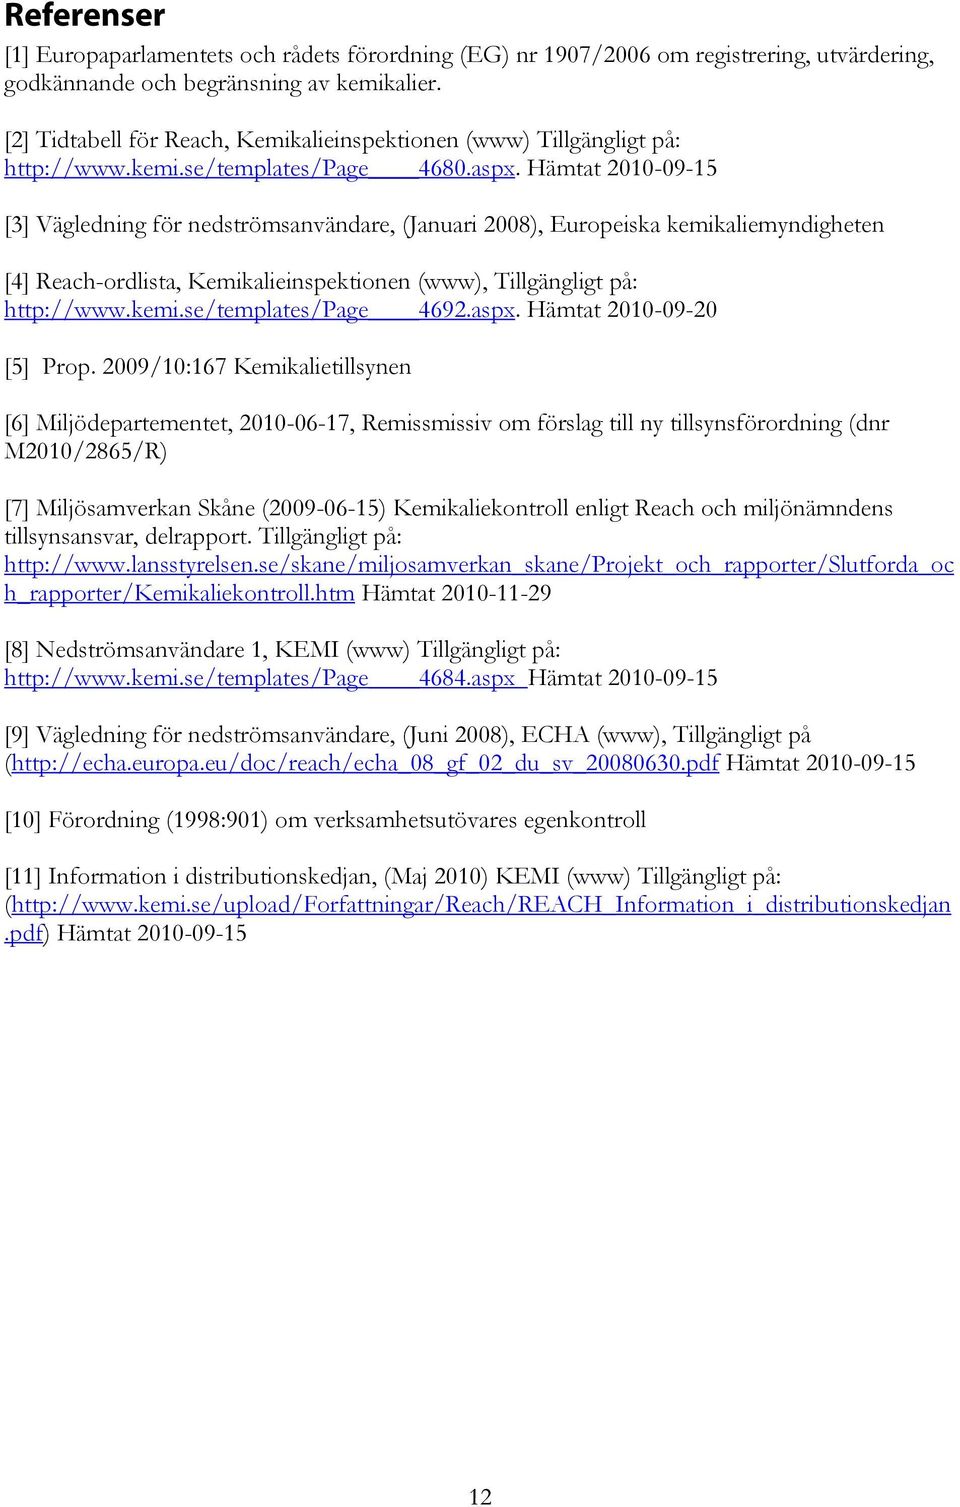 Hämtat 2010-09-15 [3] Vägledning för nedströmsanvändare, (Januari 2008), Europeiska kemikaliemyndigheten [4] Reach-ordlista, Kemikalieinspektionen (www), Tillgängligt på: http://www.kemi.se/templates/page 4692.